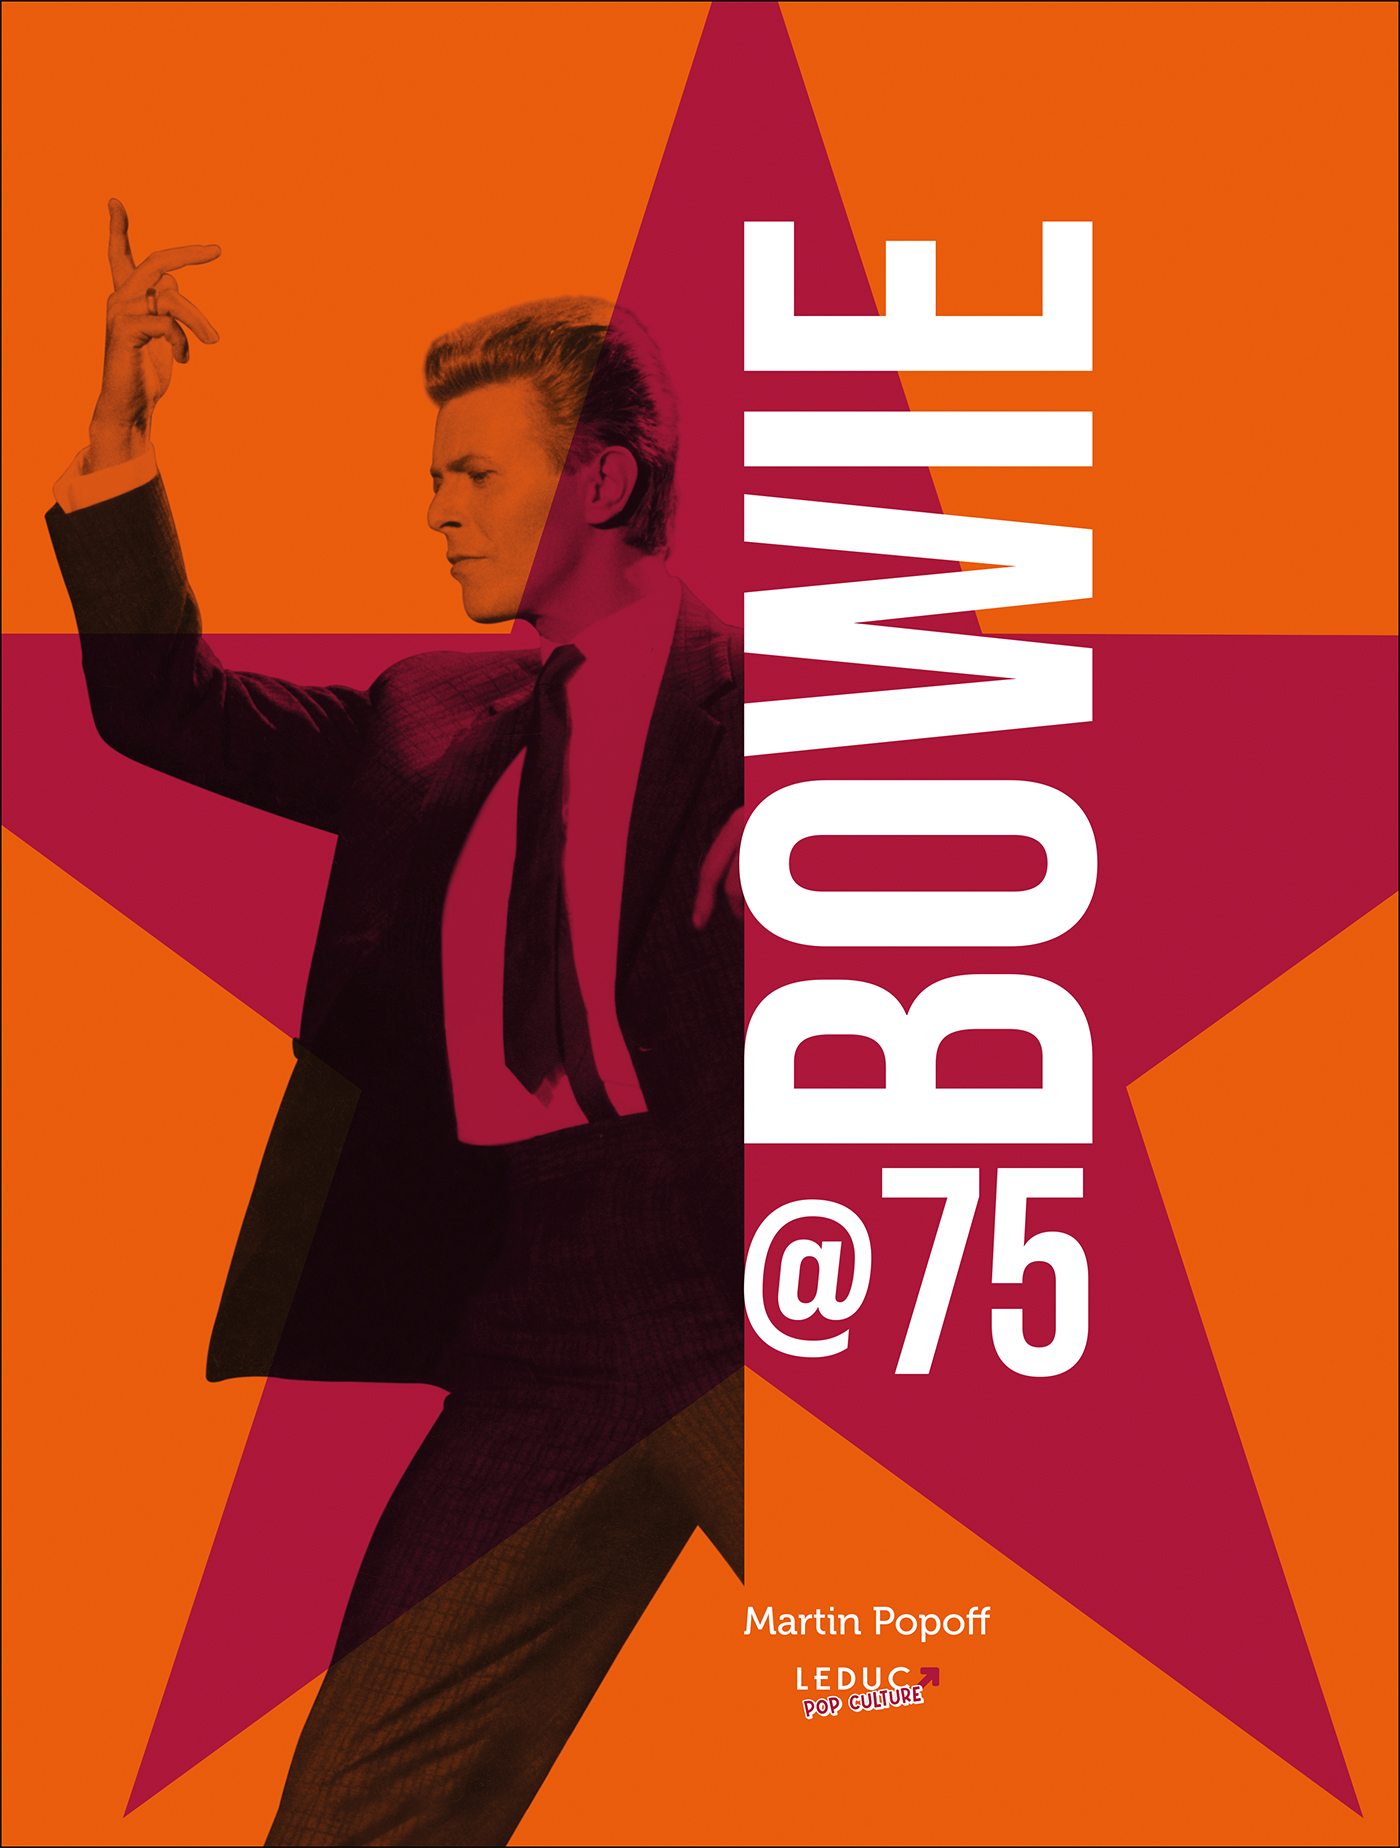 La couverture du livre "Bowie @75" de Martin Popoff